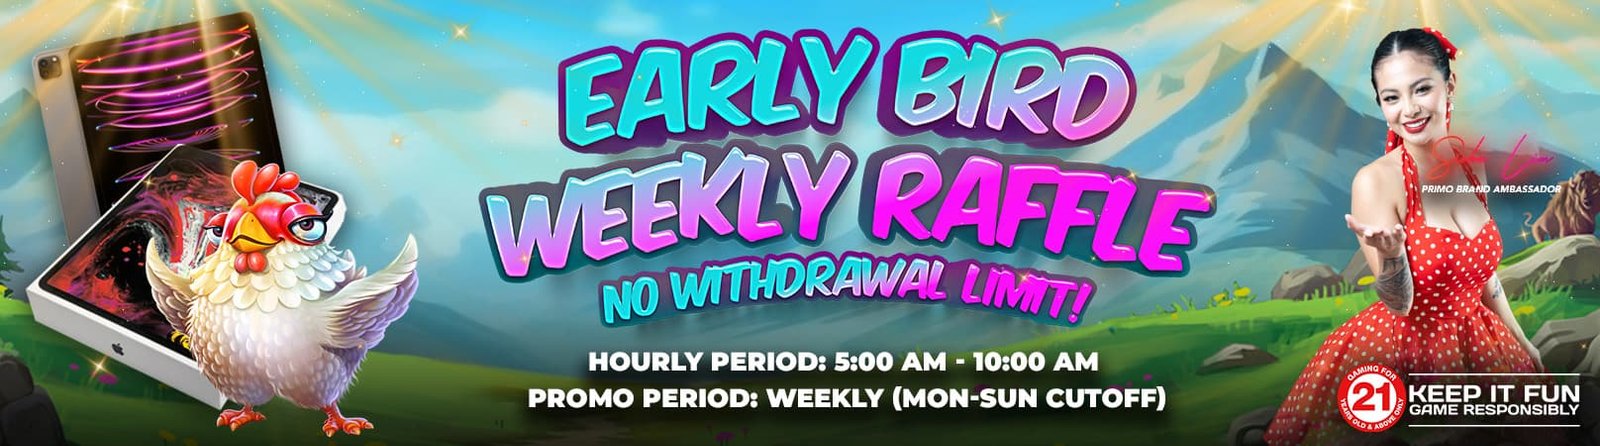 Early Bird Weekly Raffle